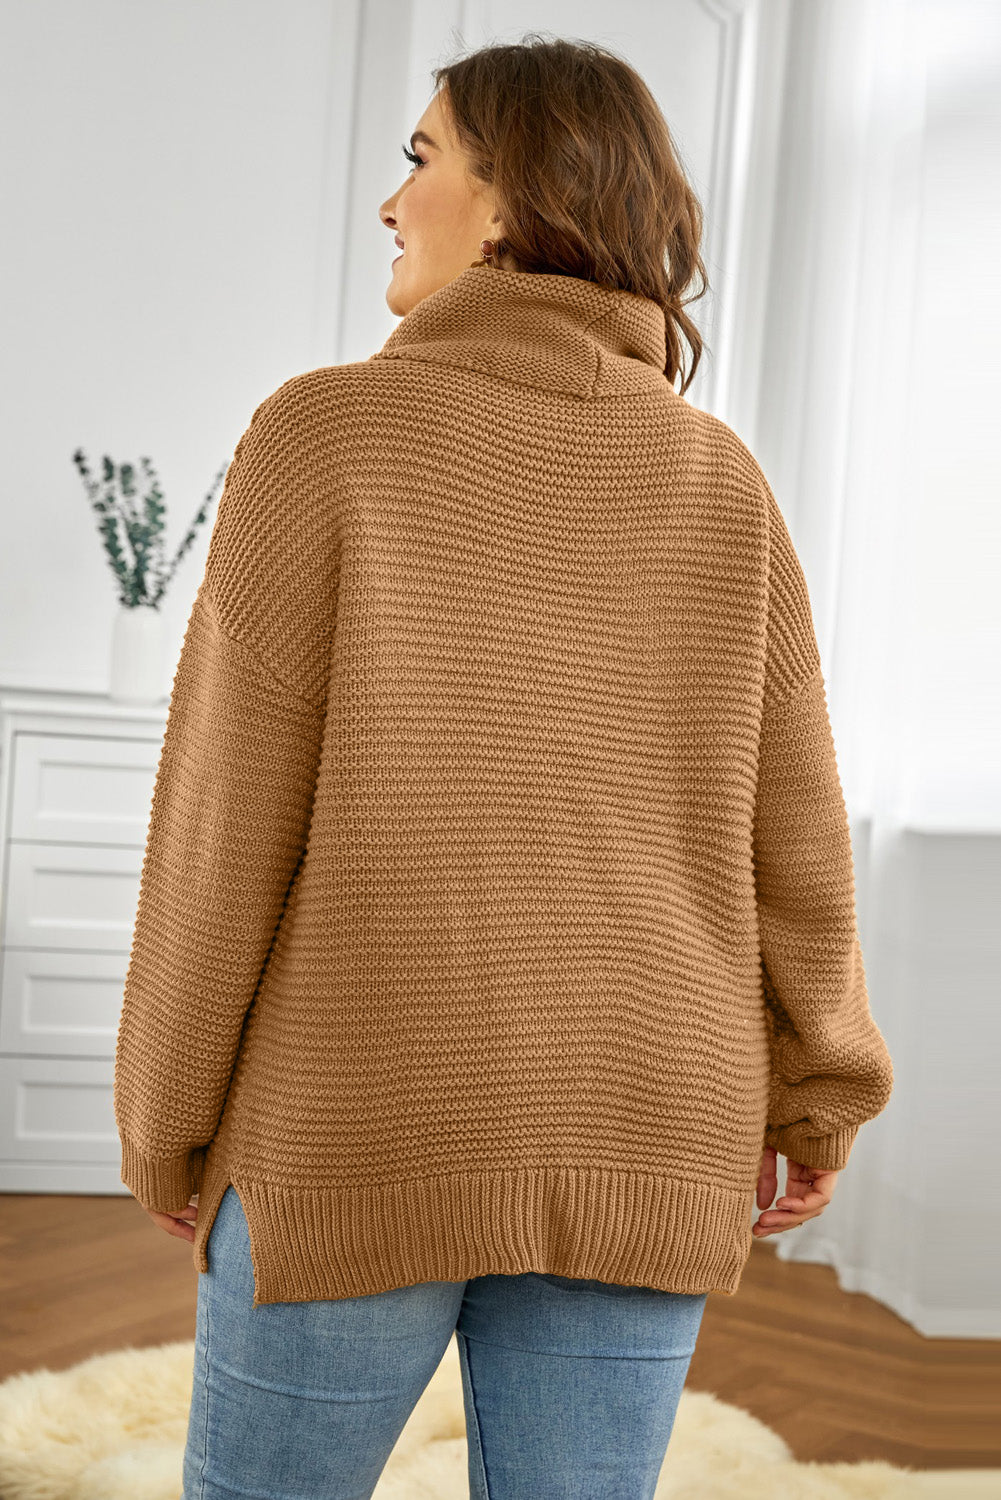 Horizontal Ribbing Turtleneck Sweater  | KIKI COUTURE-Women's Clothing, Designer Fashions, Shoes, Bags